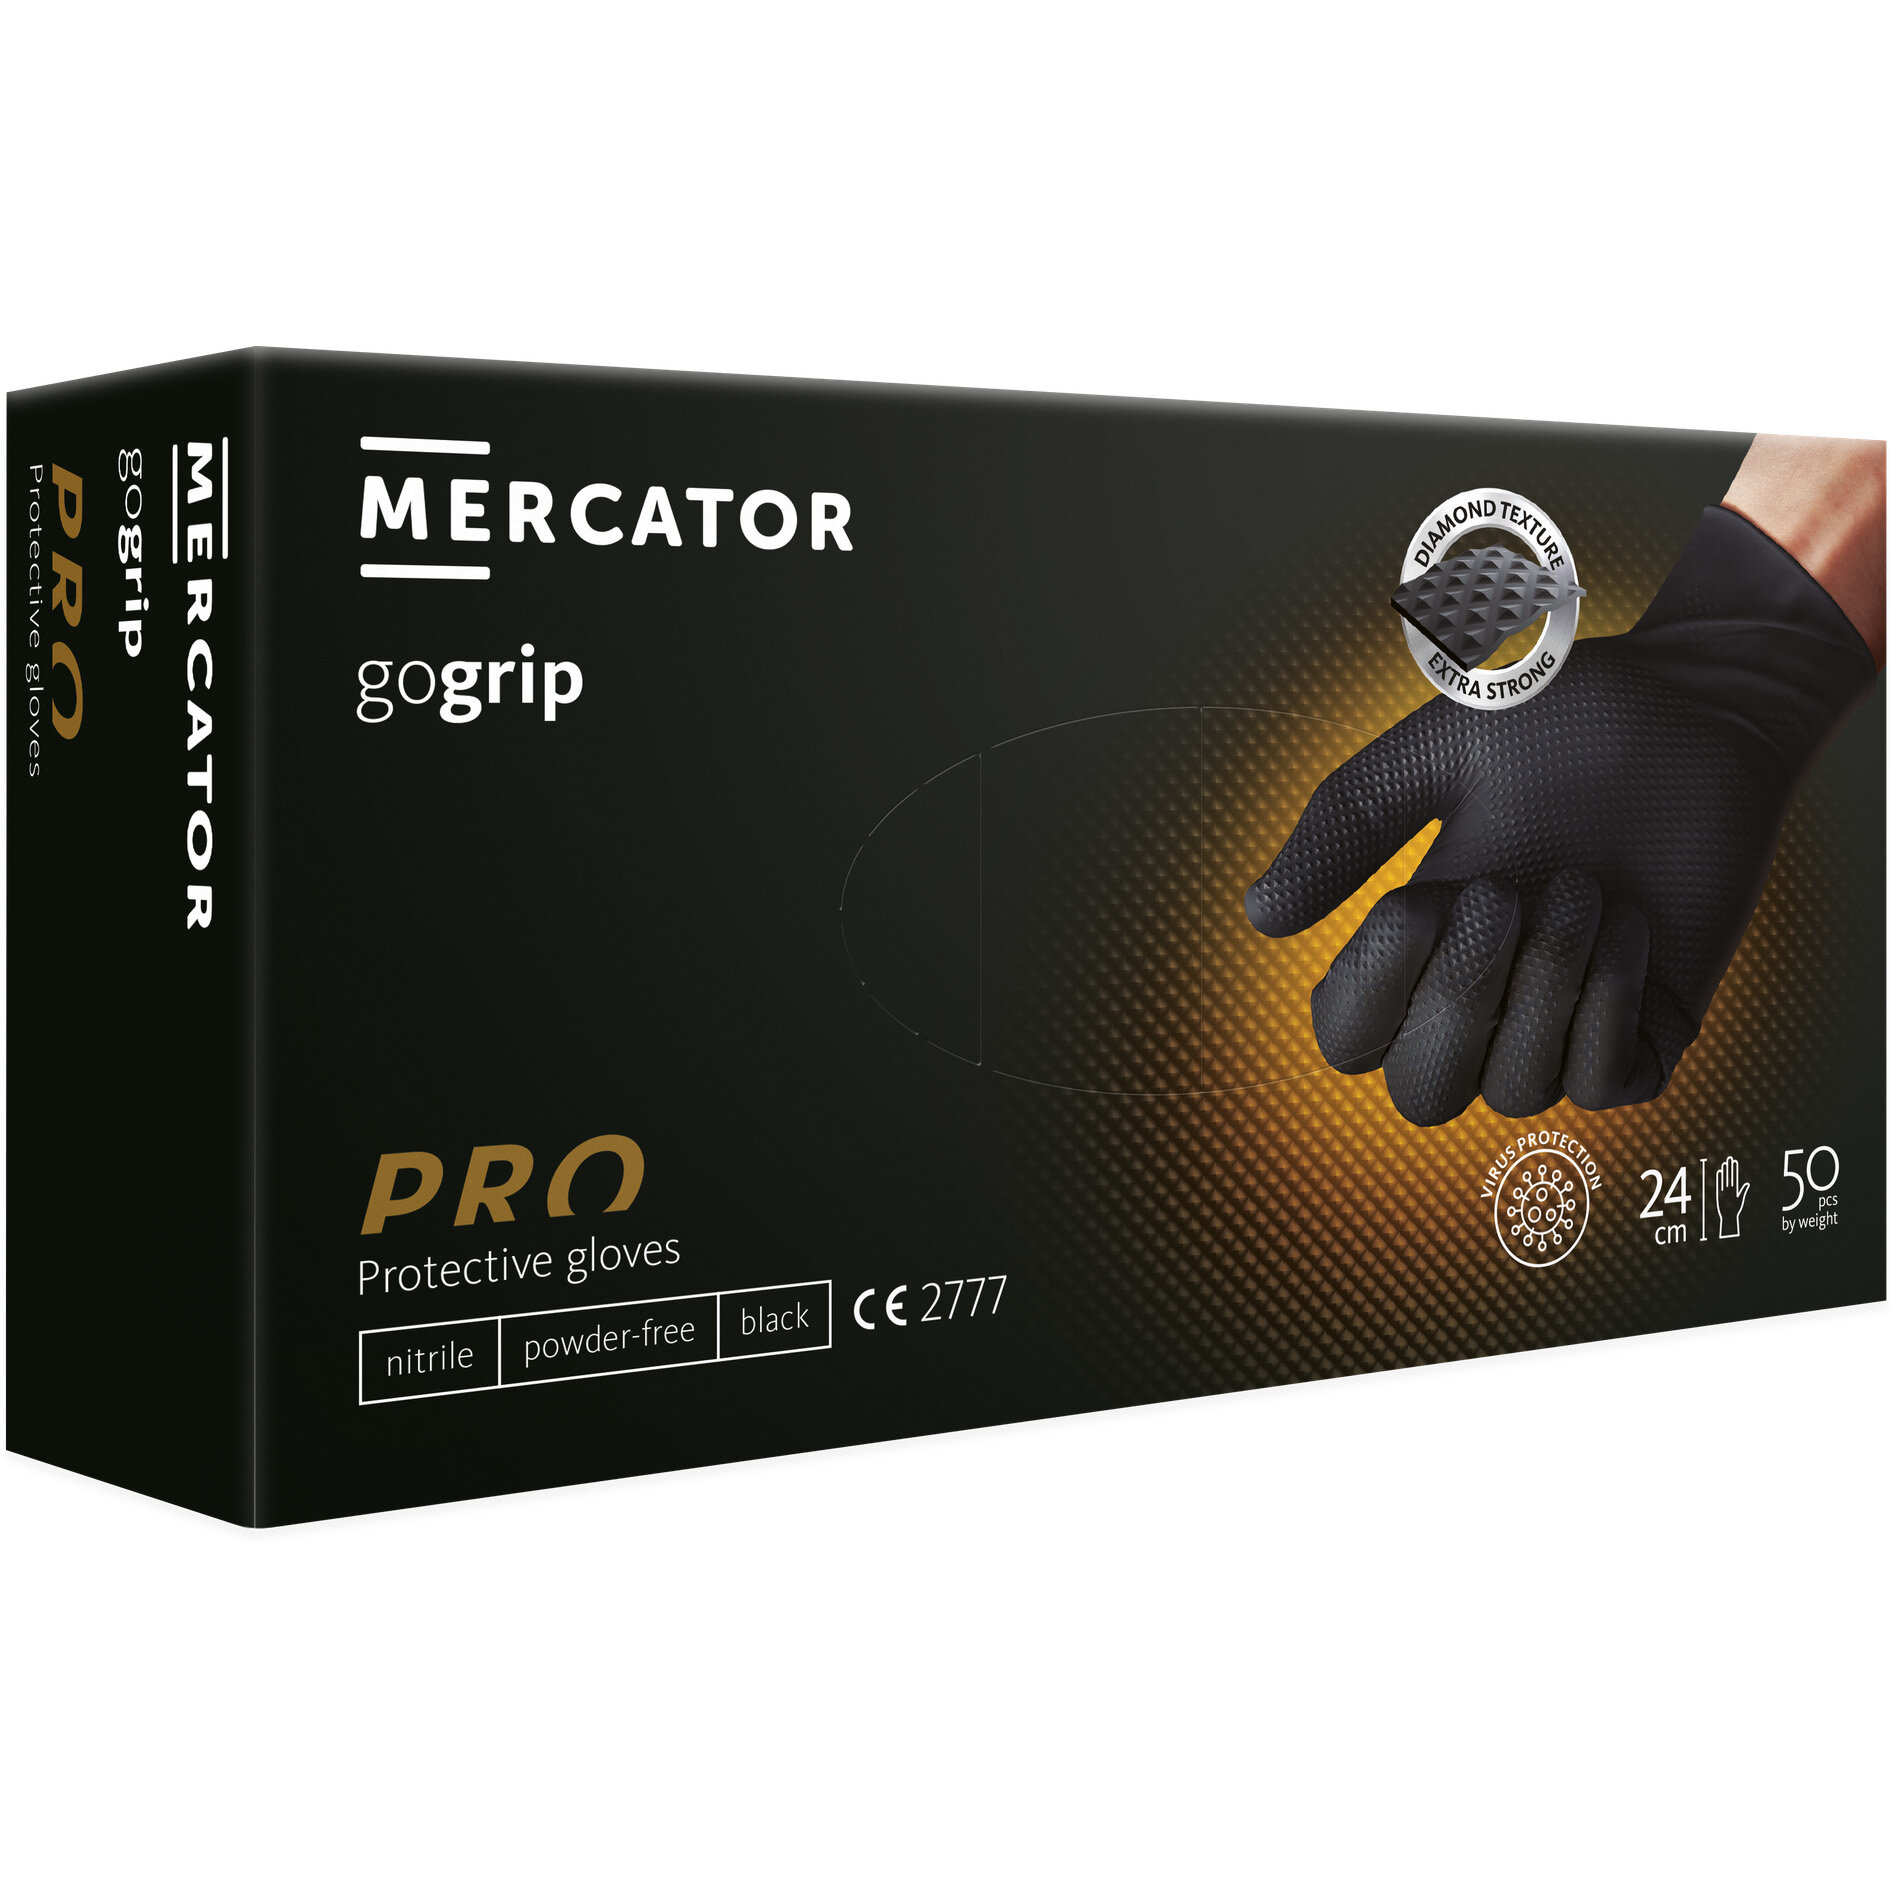 Mercator GoGrip negru XS mănuși de nitril nitril fără pulbere texturate - 50 buc.